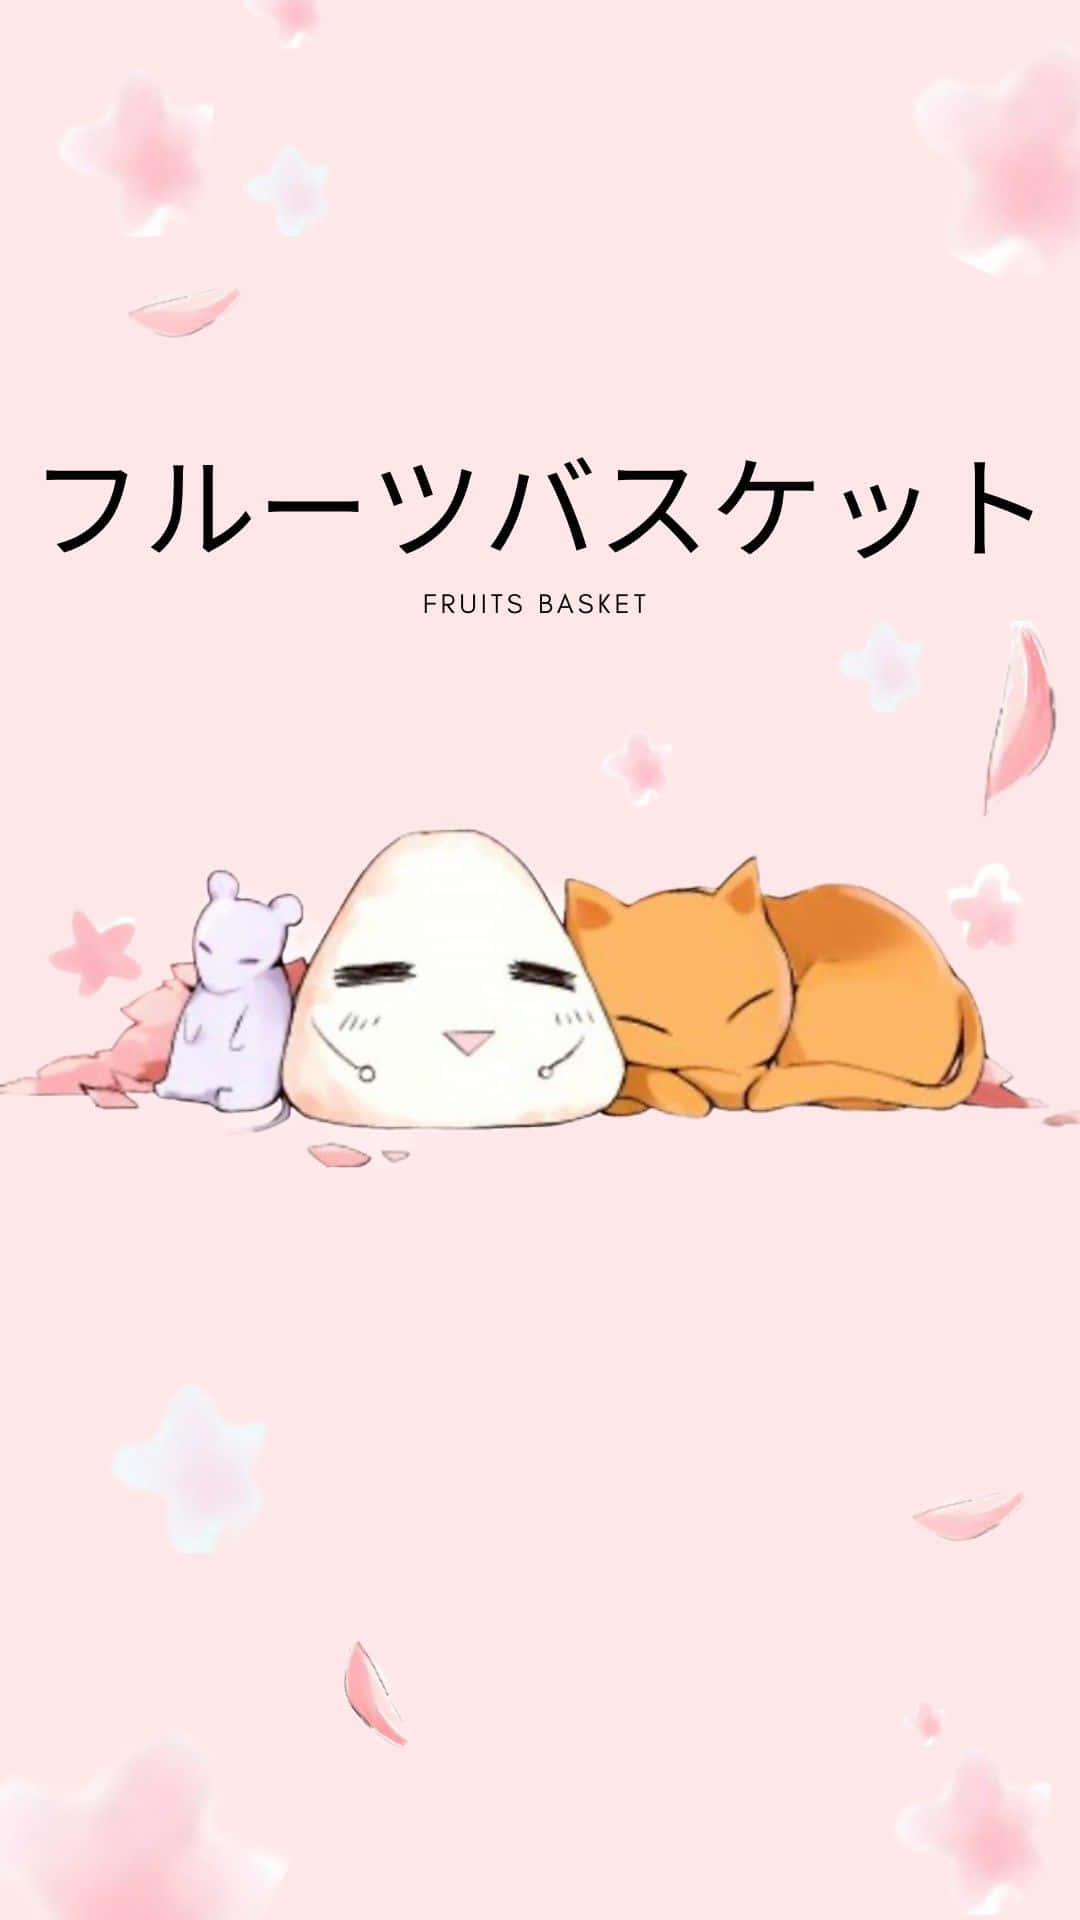 Live Wallpaper af Fruits Basket Anime med Sohma Zodiac Dyr Form Wallpaper